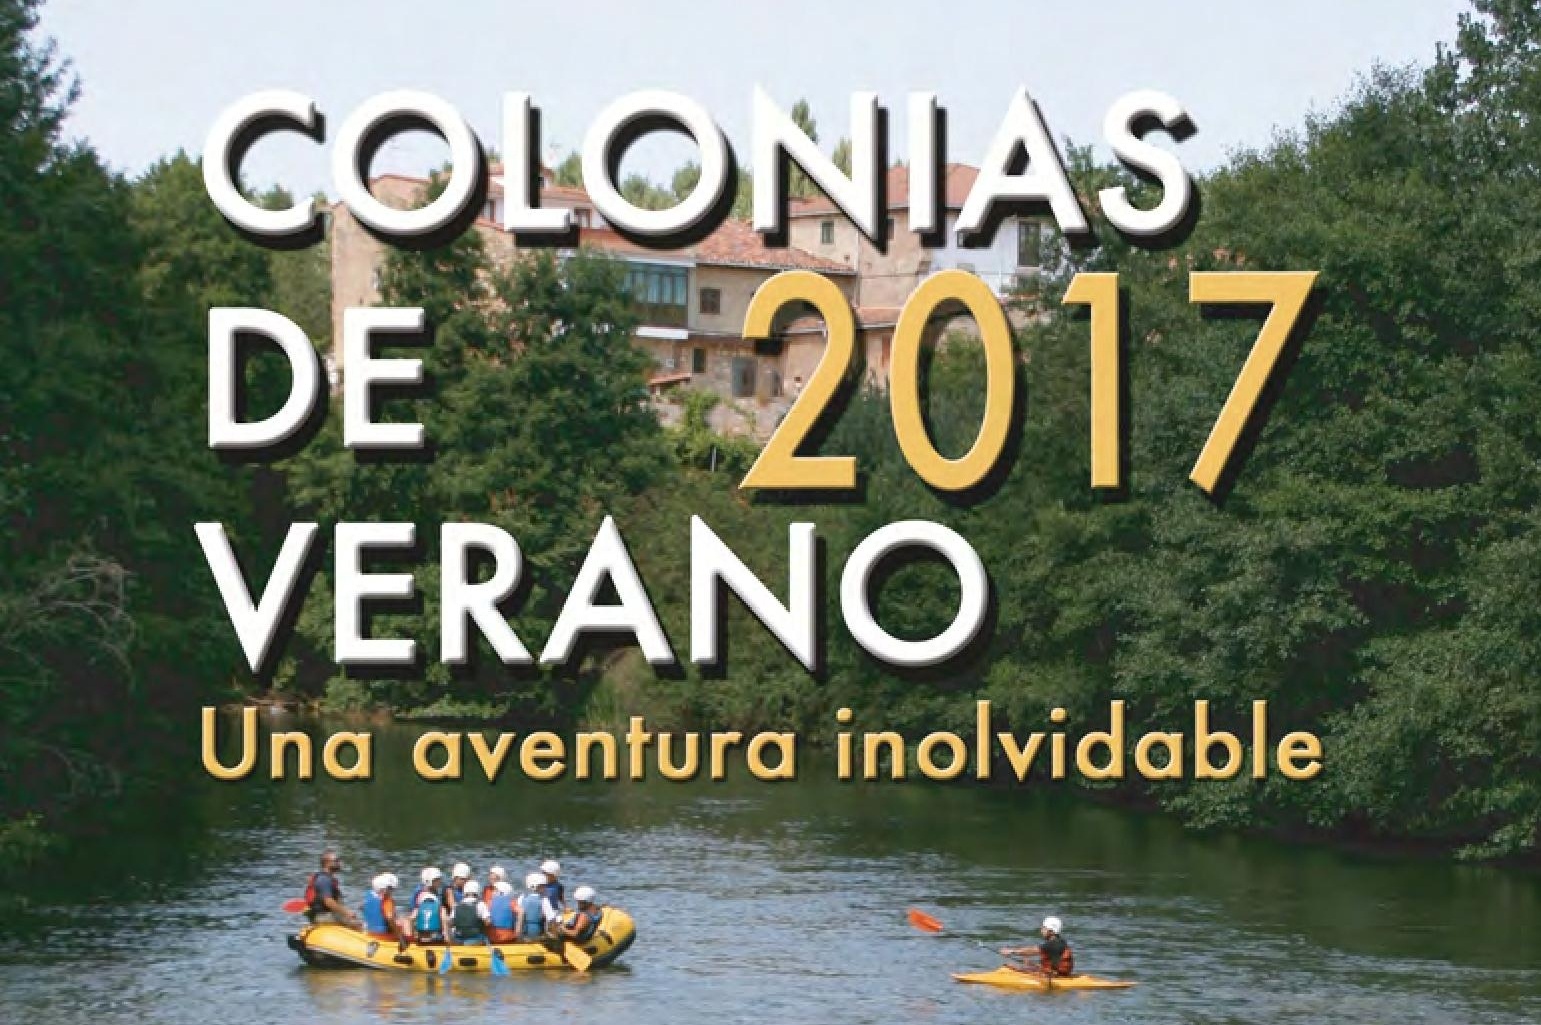 Colonias de Verano 2017. Polientes. Cantabria